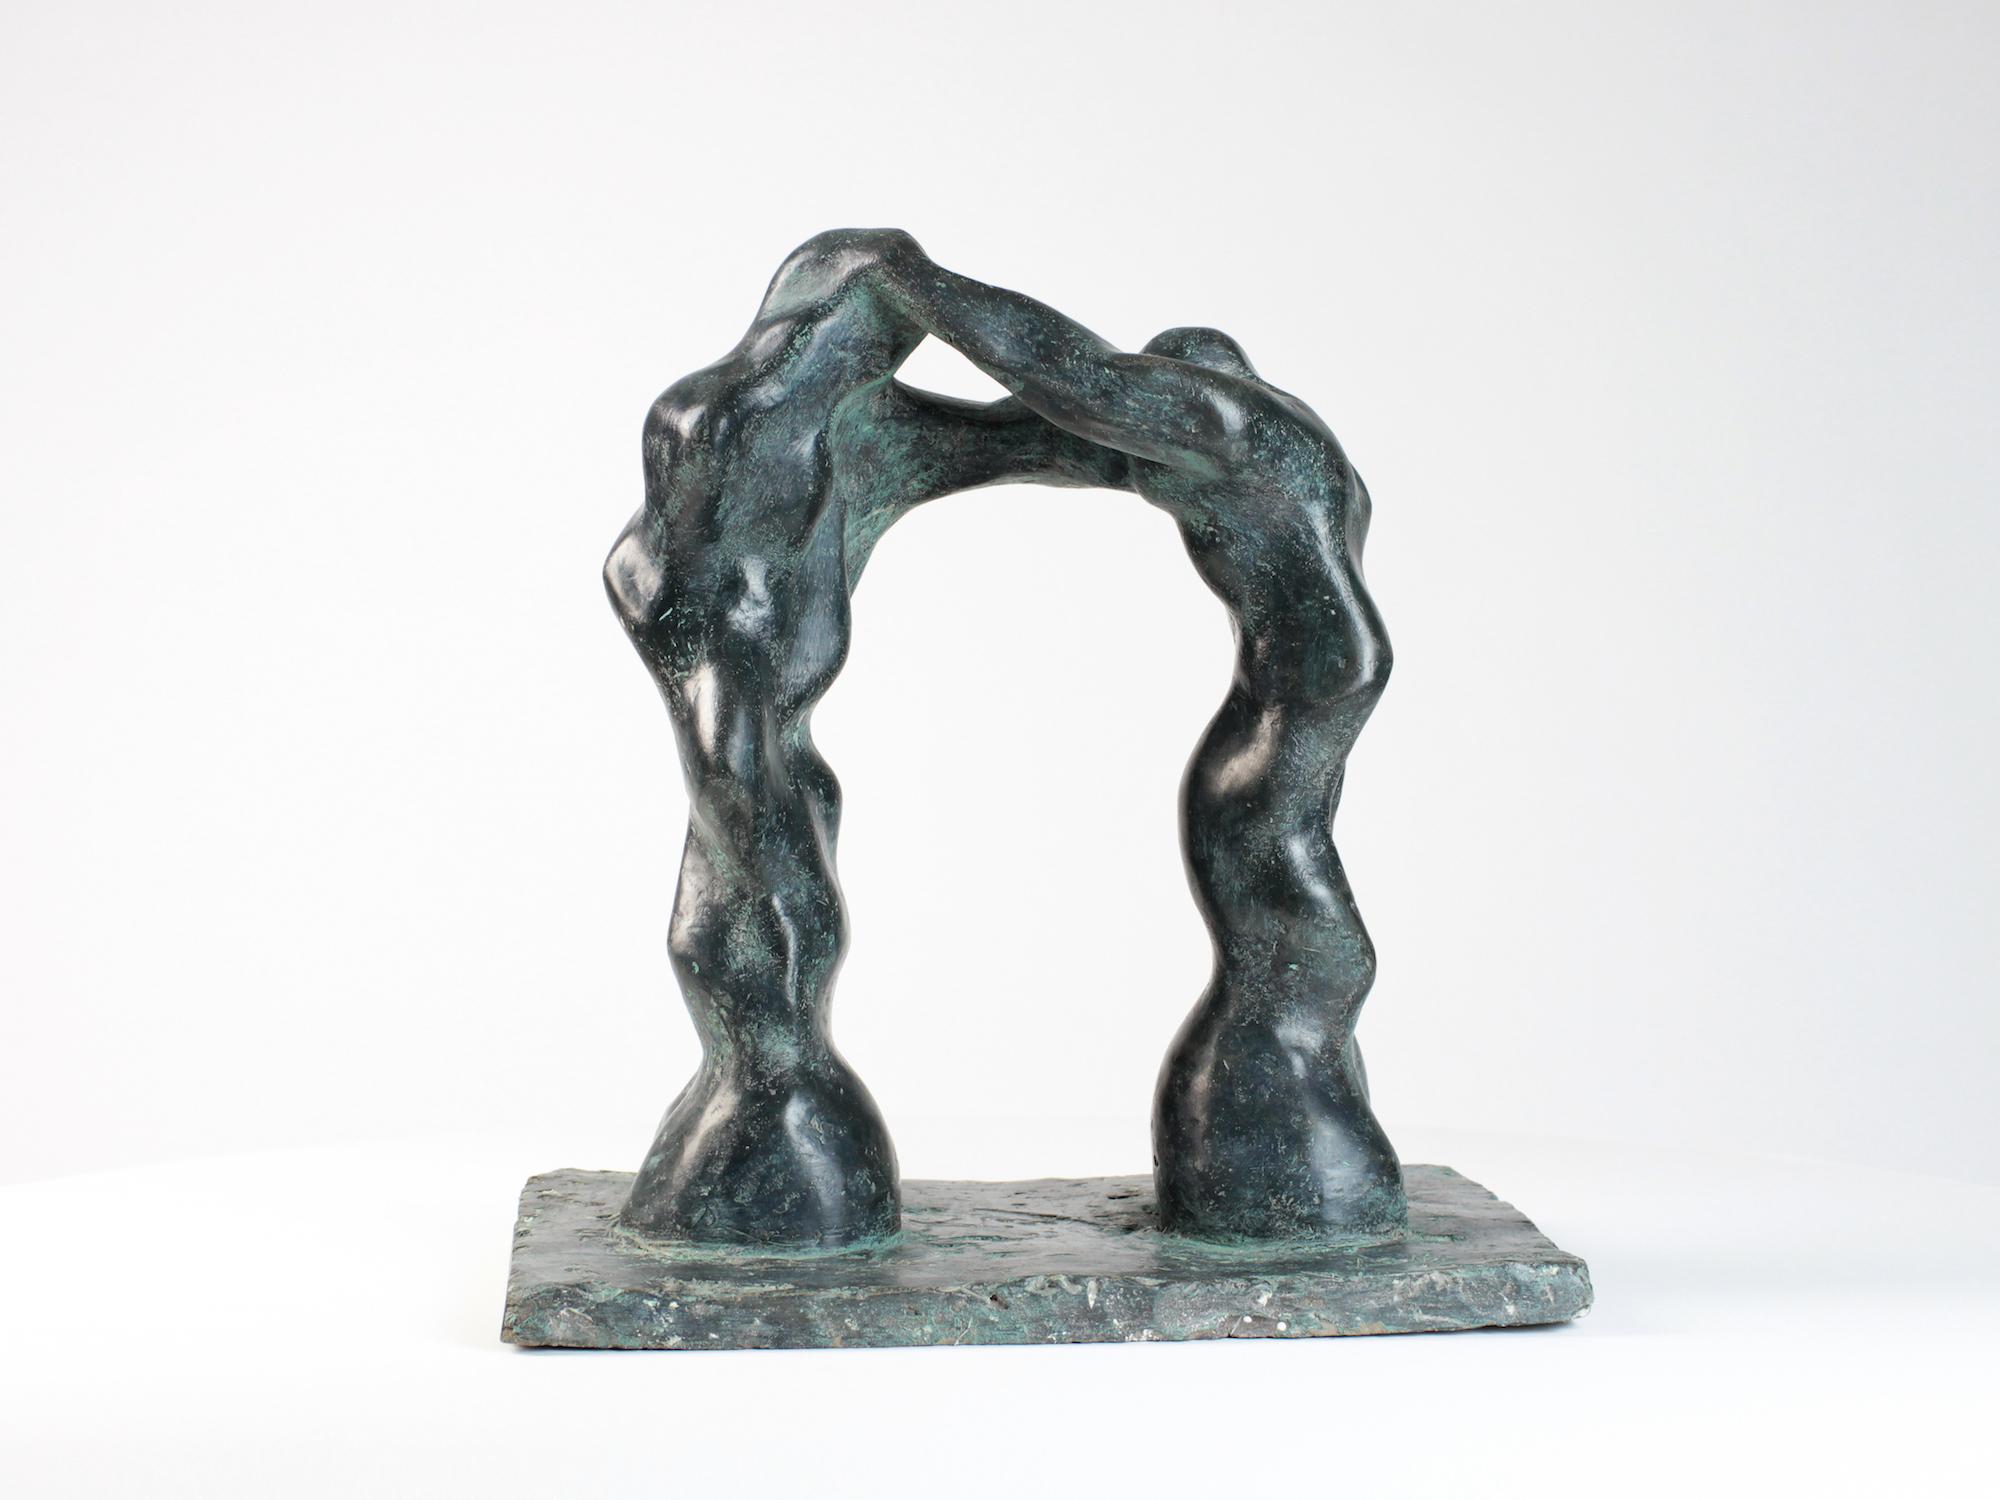 Large Arch ist eine Bronzeskulptur des zeitgenössischen Künstlers Yann Guillon mit den Maßen 40 × 25 × 15 cm (15,7 × 9,8 × 5,9 Zoll).
Die Skulptur ist signiert und nummeriert, gehört zu einer limitierten Auflage von 8 Exemplaren + 4 Künstlerabzügen